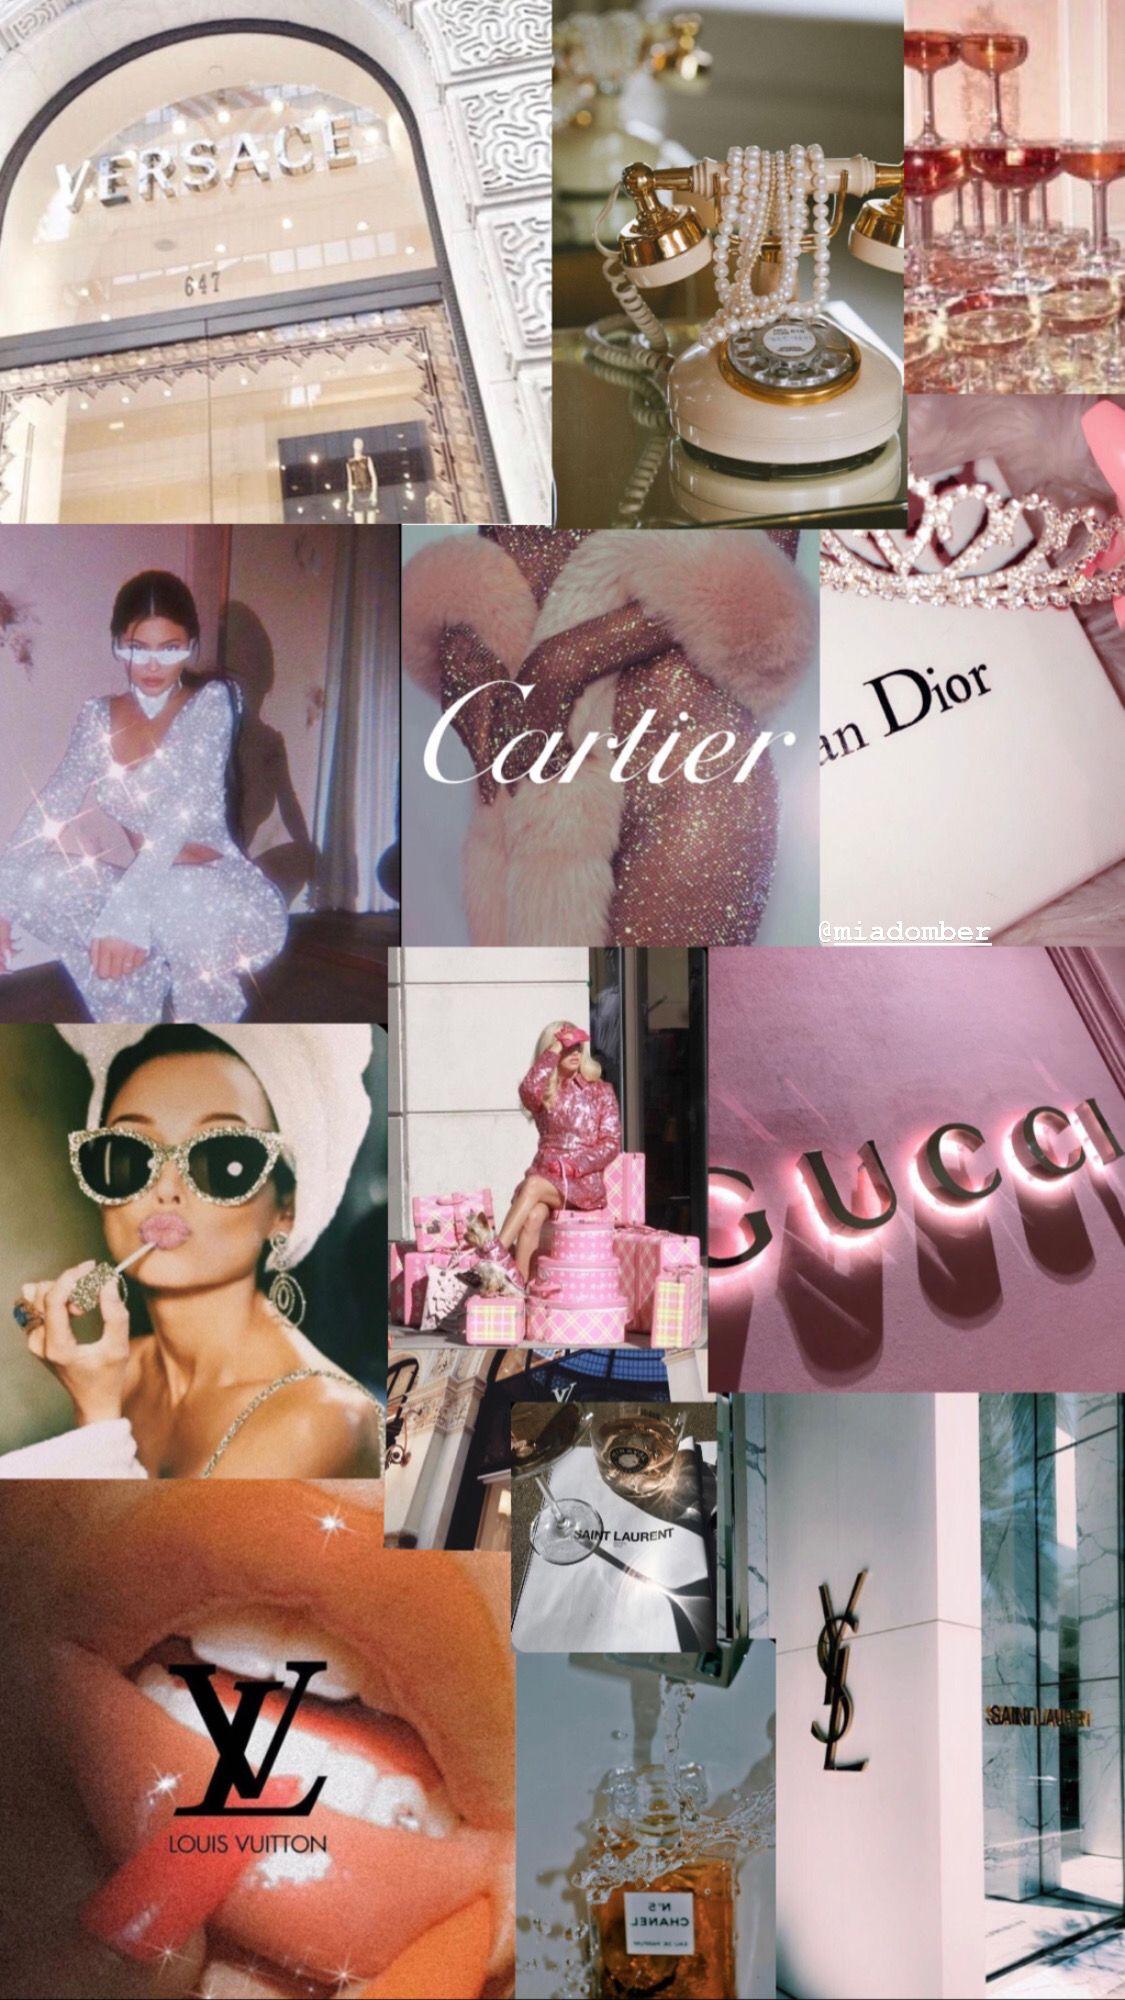 1125 x 2000 · jpeg - Wallpaper Gucci /Vogue / Dior | Vogue wallpaper, Iphone wallpaper ...